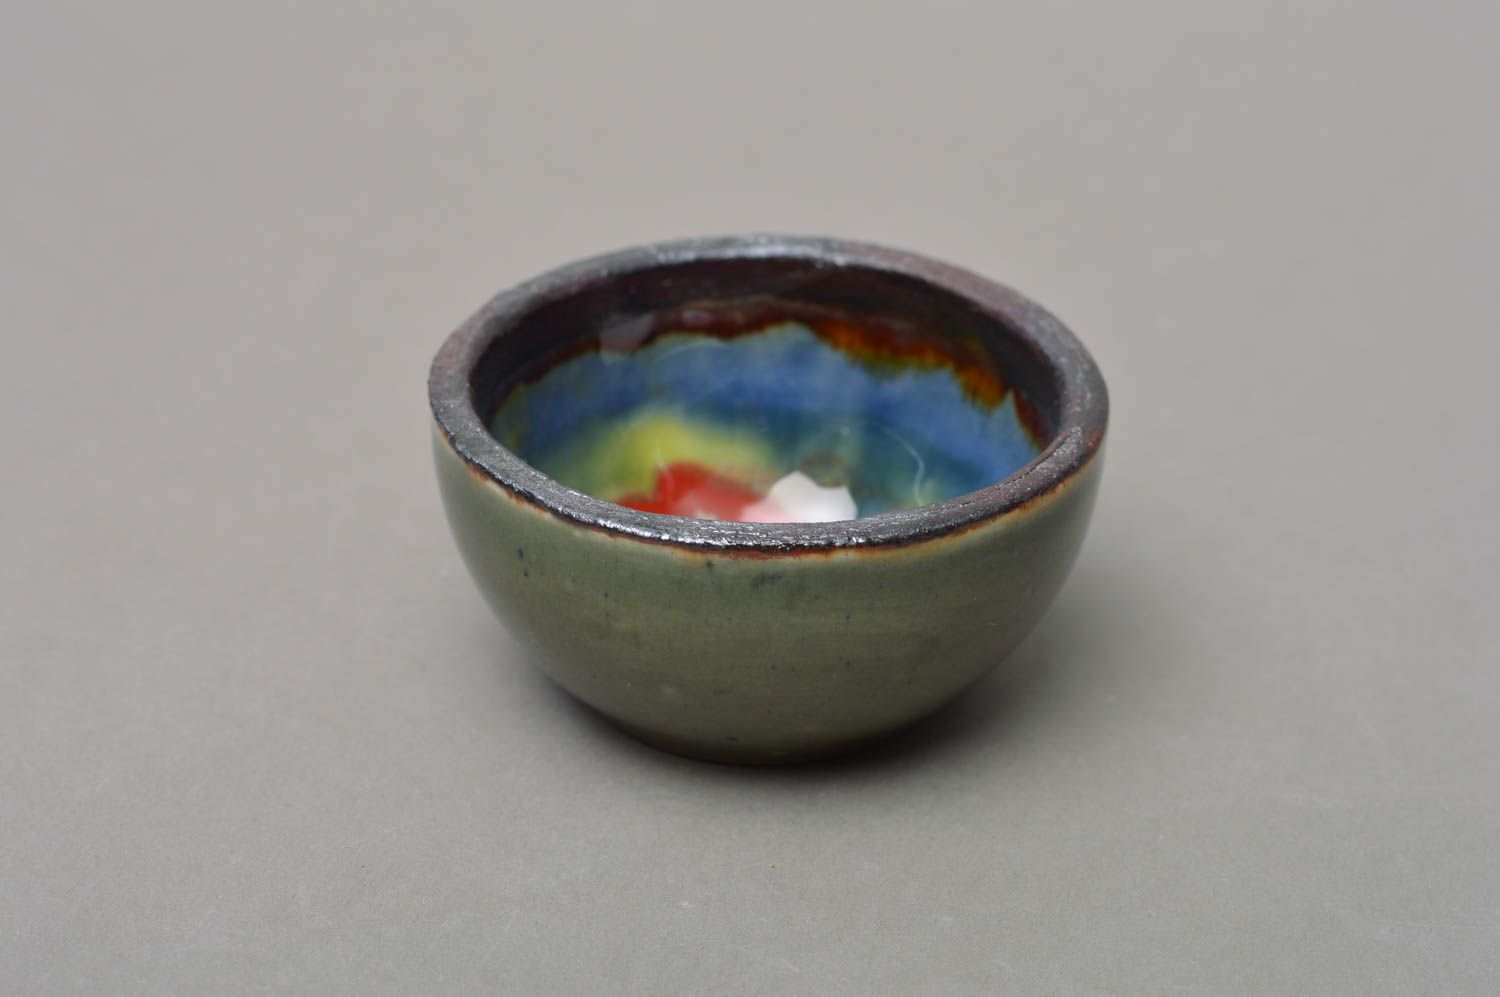 Belle saucière porcelaine ronde faite main peinte de glaçure colorée vaisselle photo 2